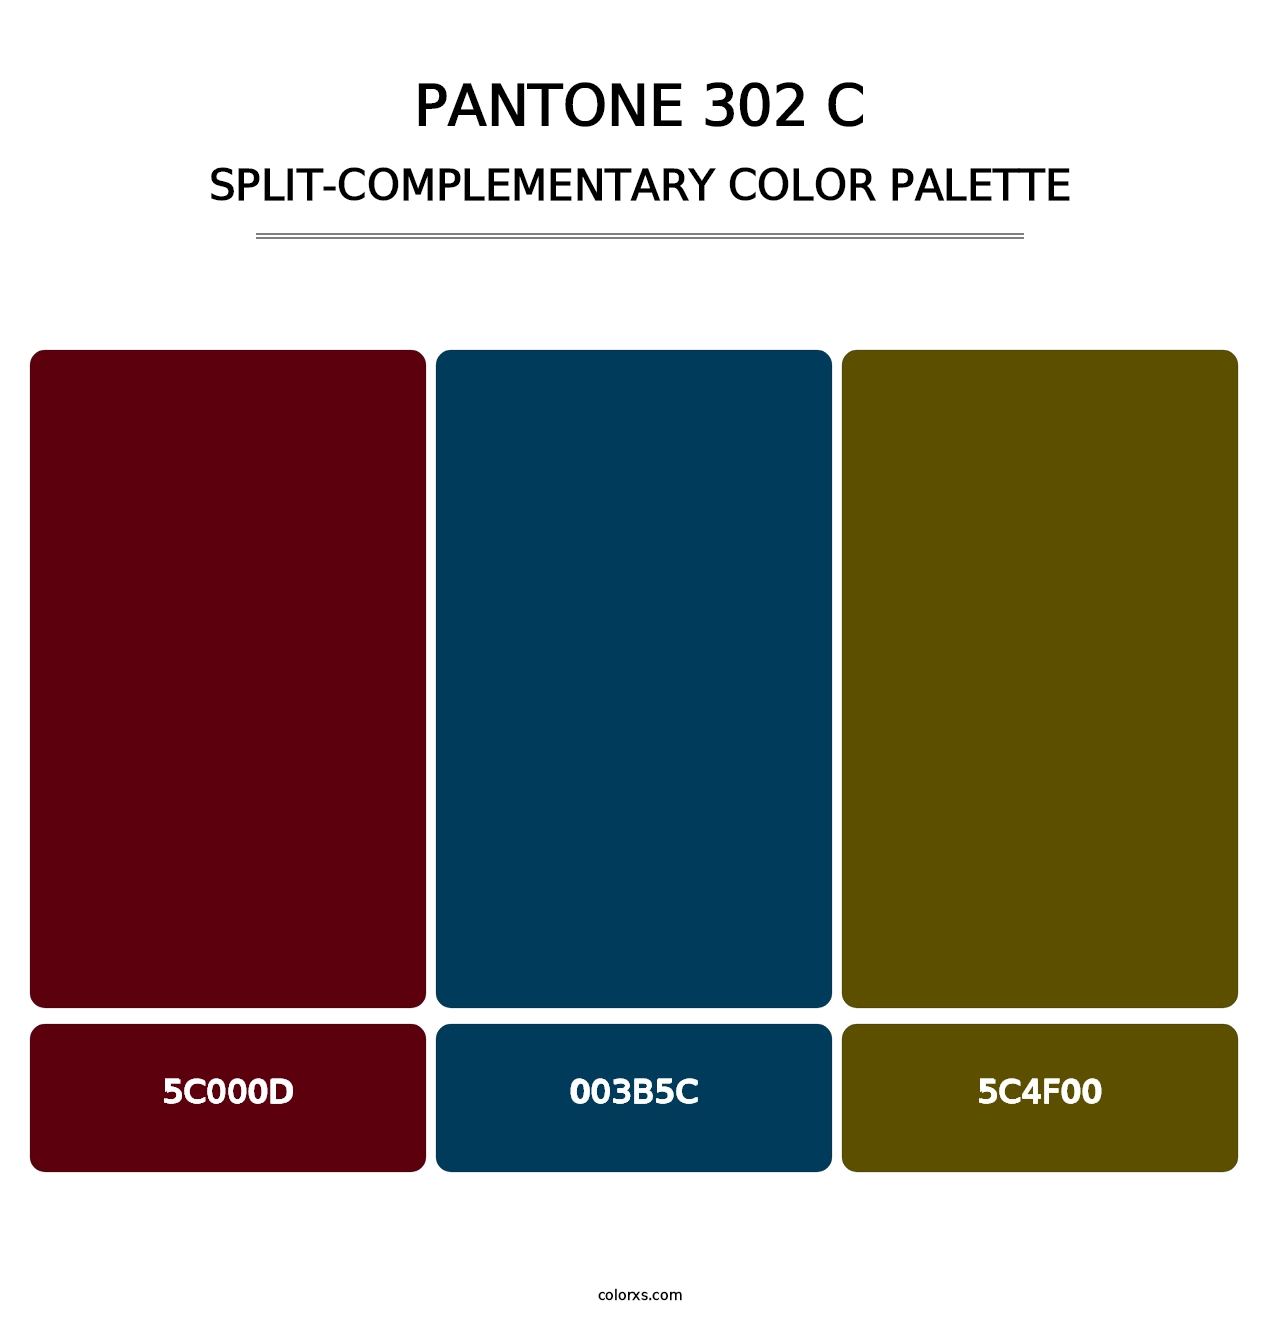 PANTONE 302 C - Split-Complementary Color Palette